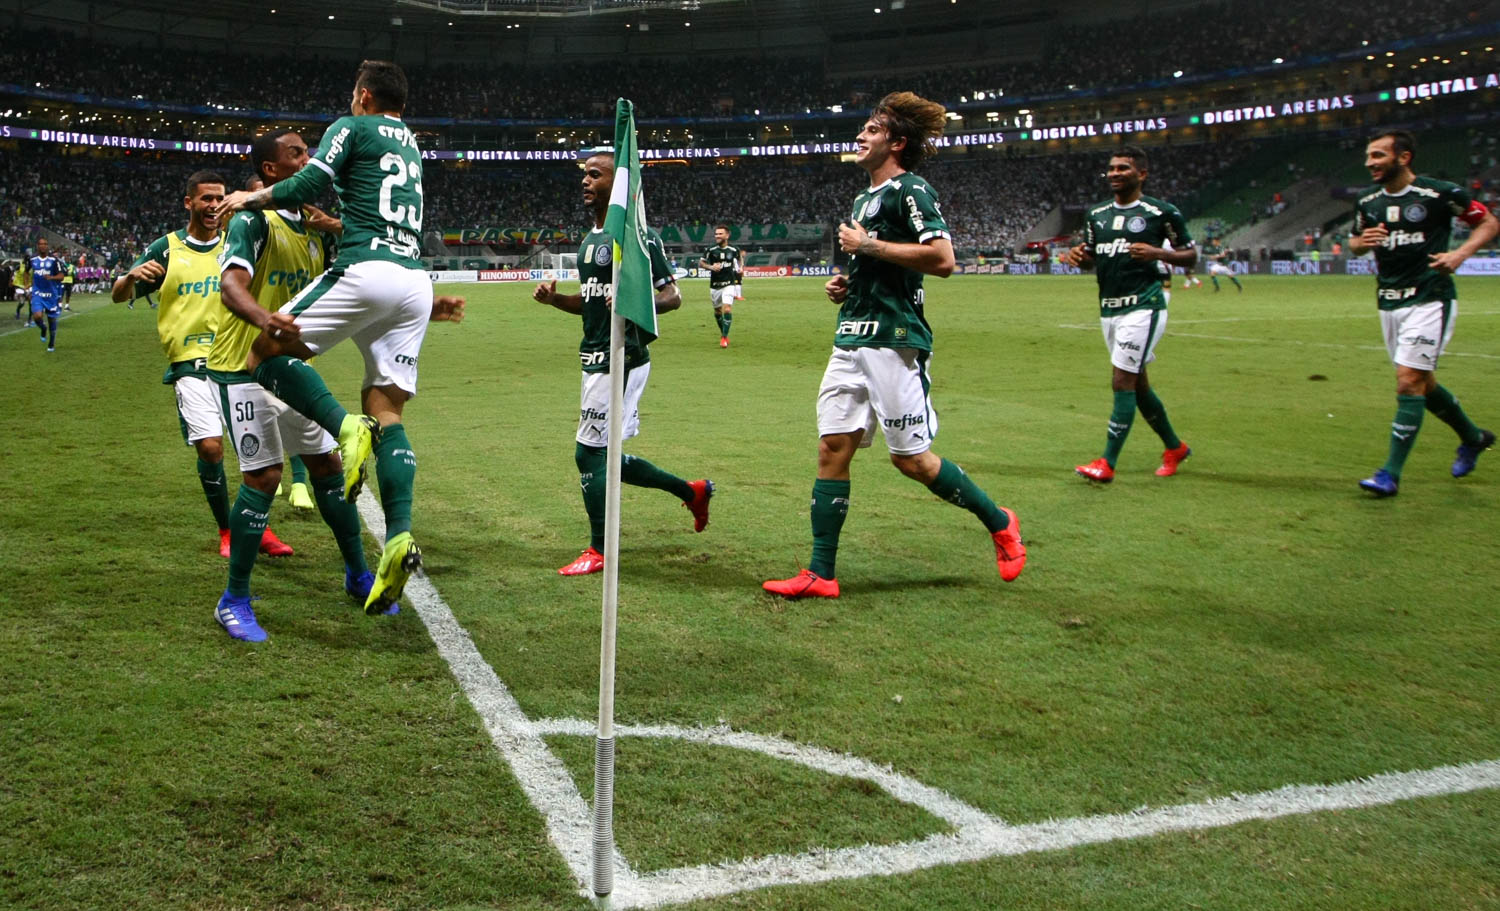 PAULISTÃO: Santos, Palmeiras, Corinthians e São Paulo tentam confirmar favoritismo